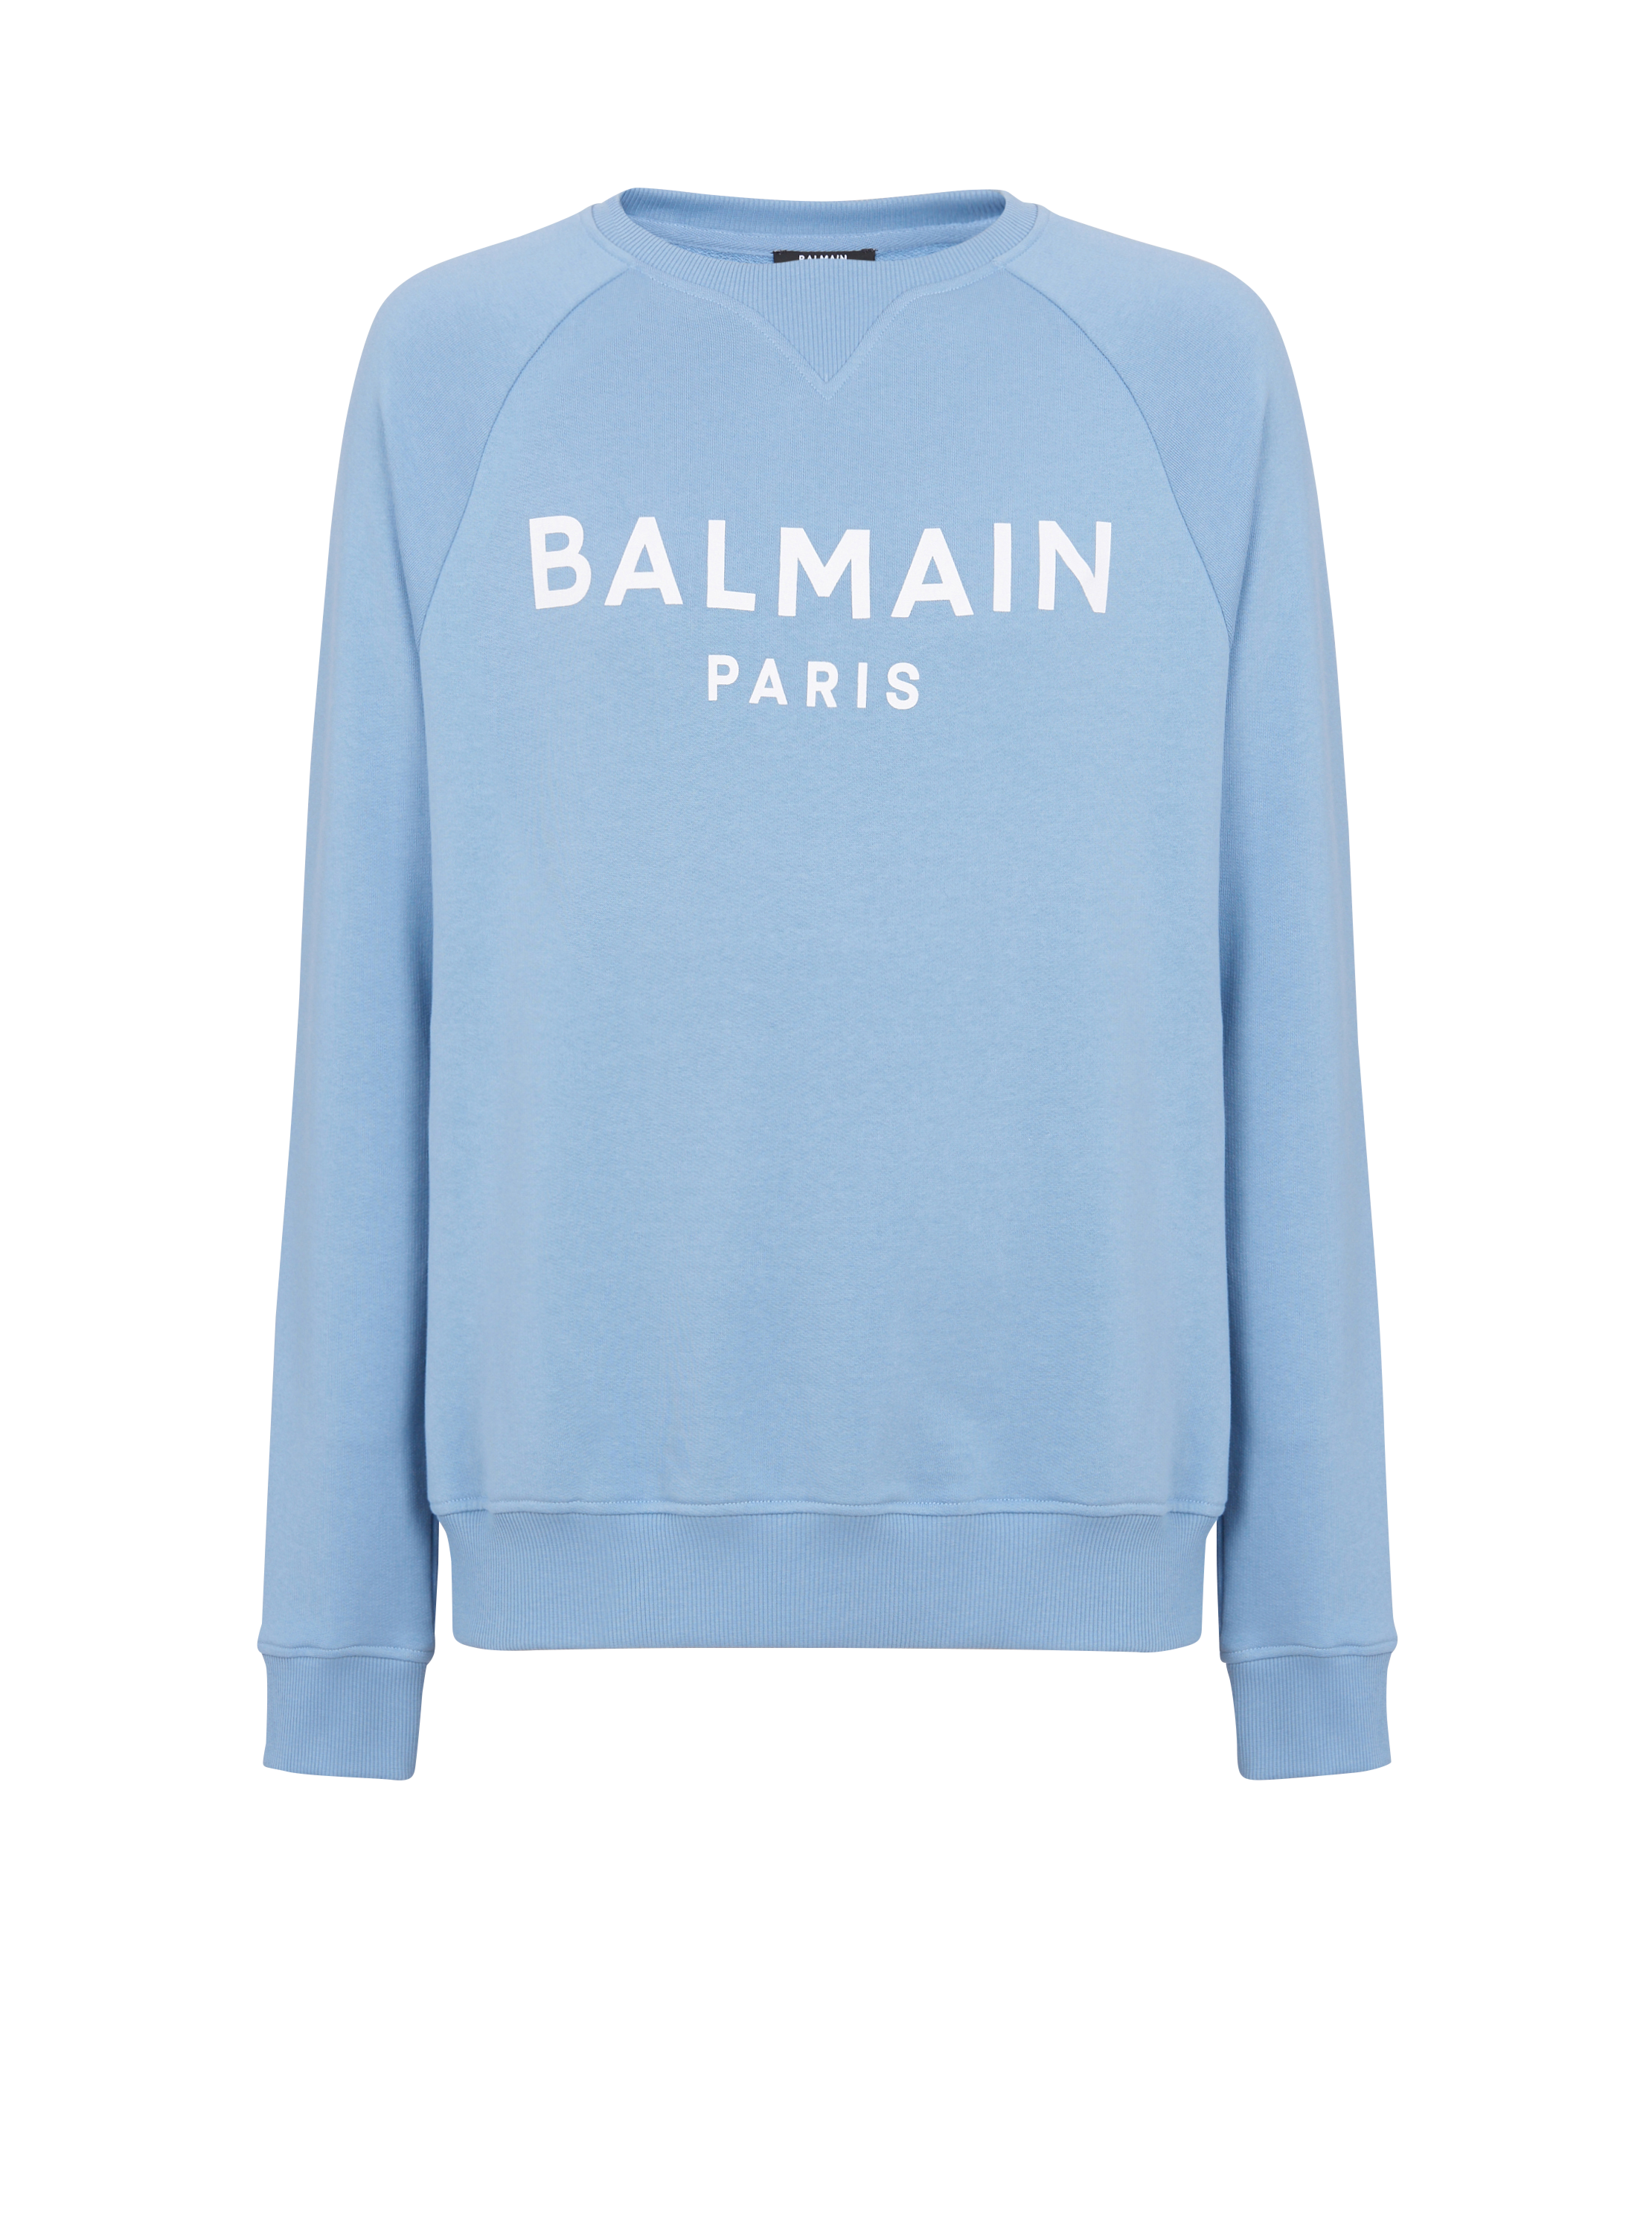 Balmain Paris 스웨트셔츠, 파란색, hi-res